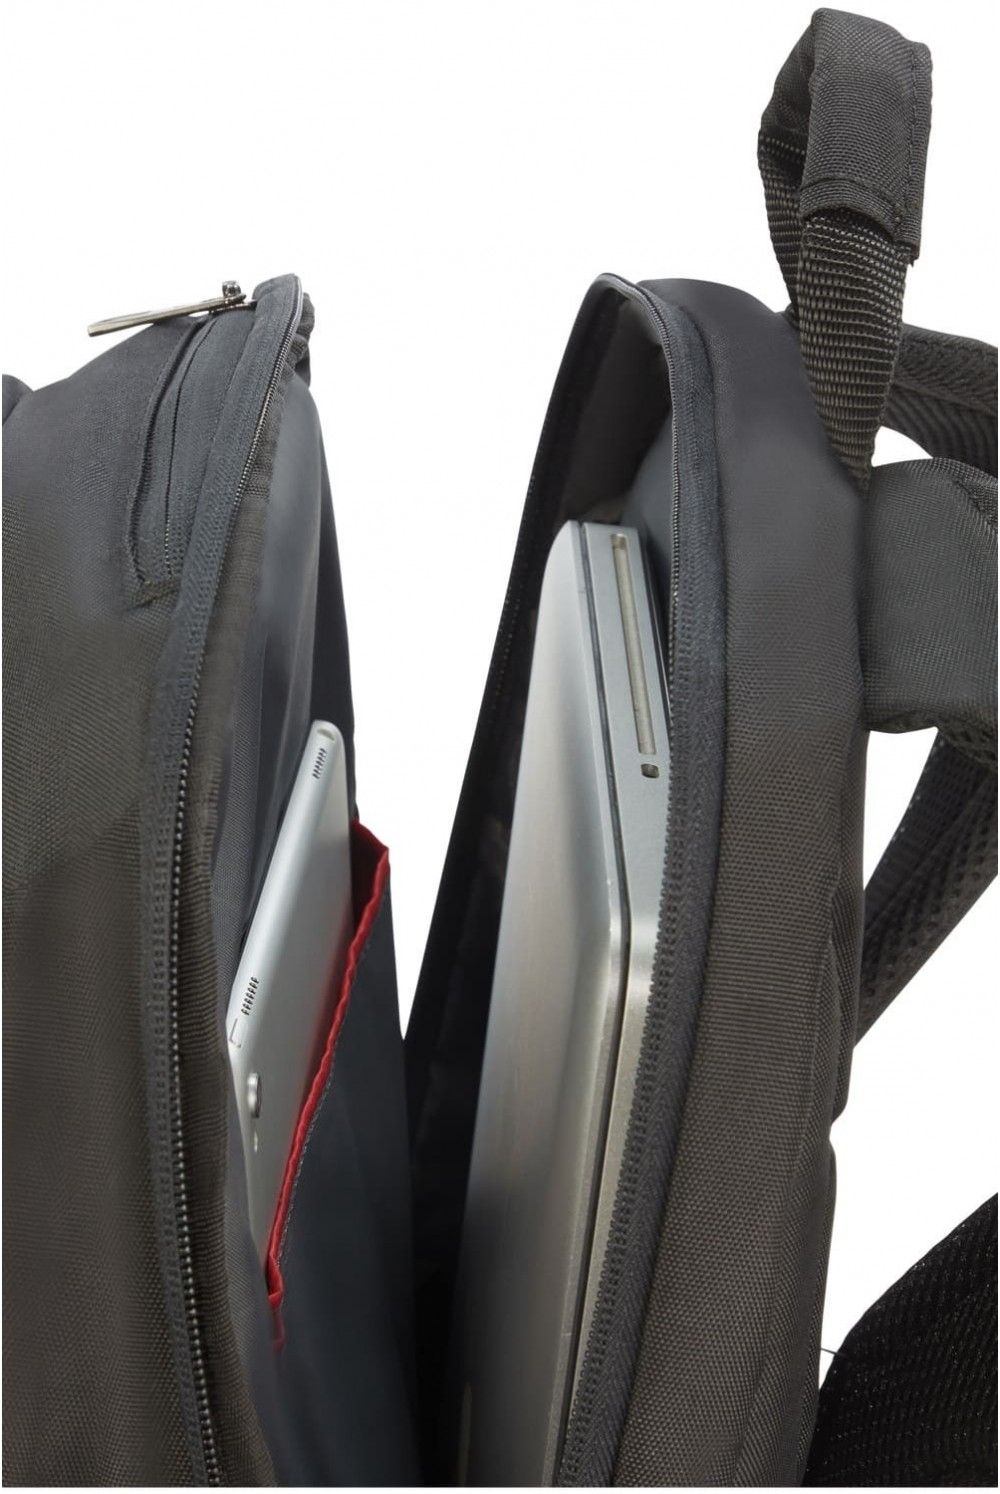 Samsonite Guardit 2 Laptop Backpack 14.1 inches